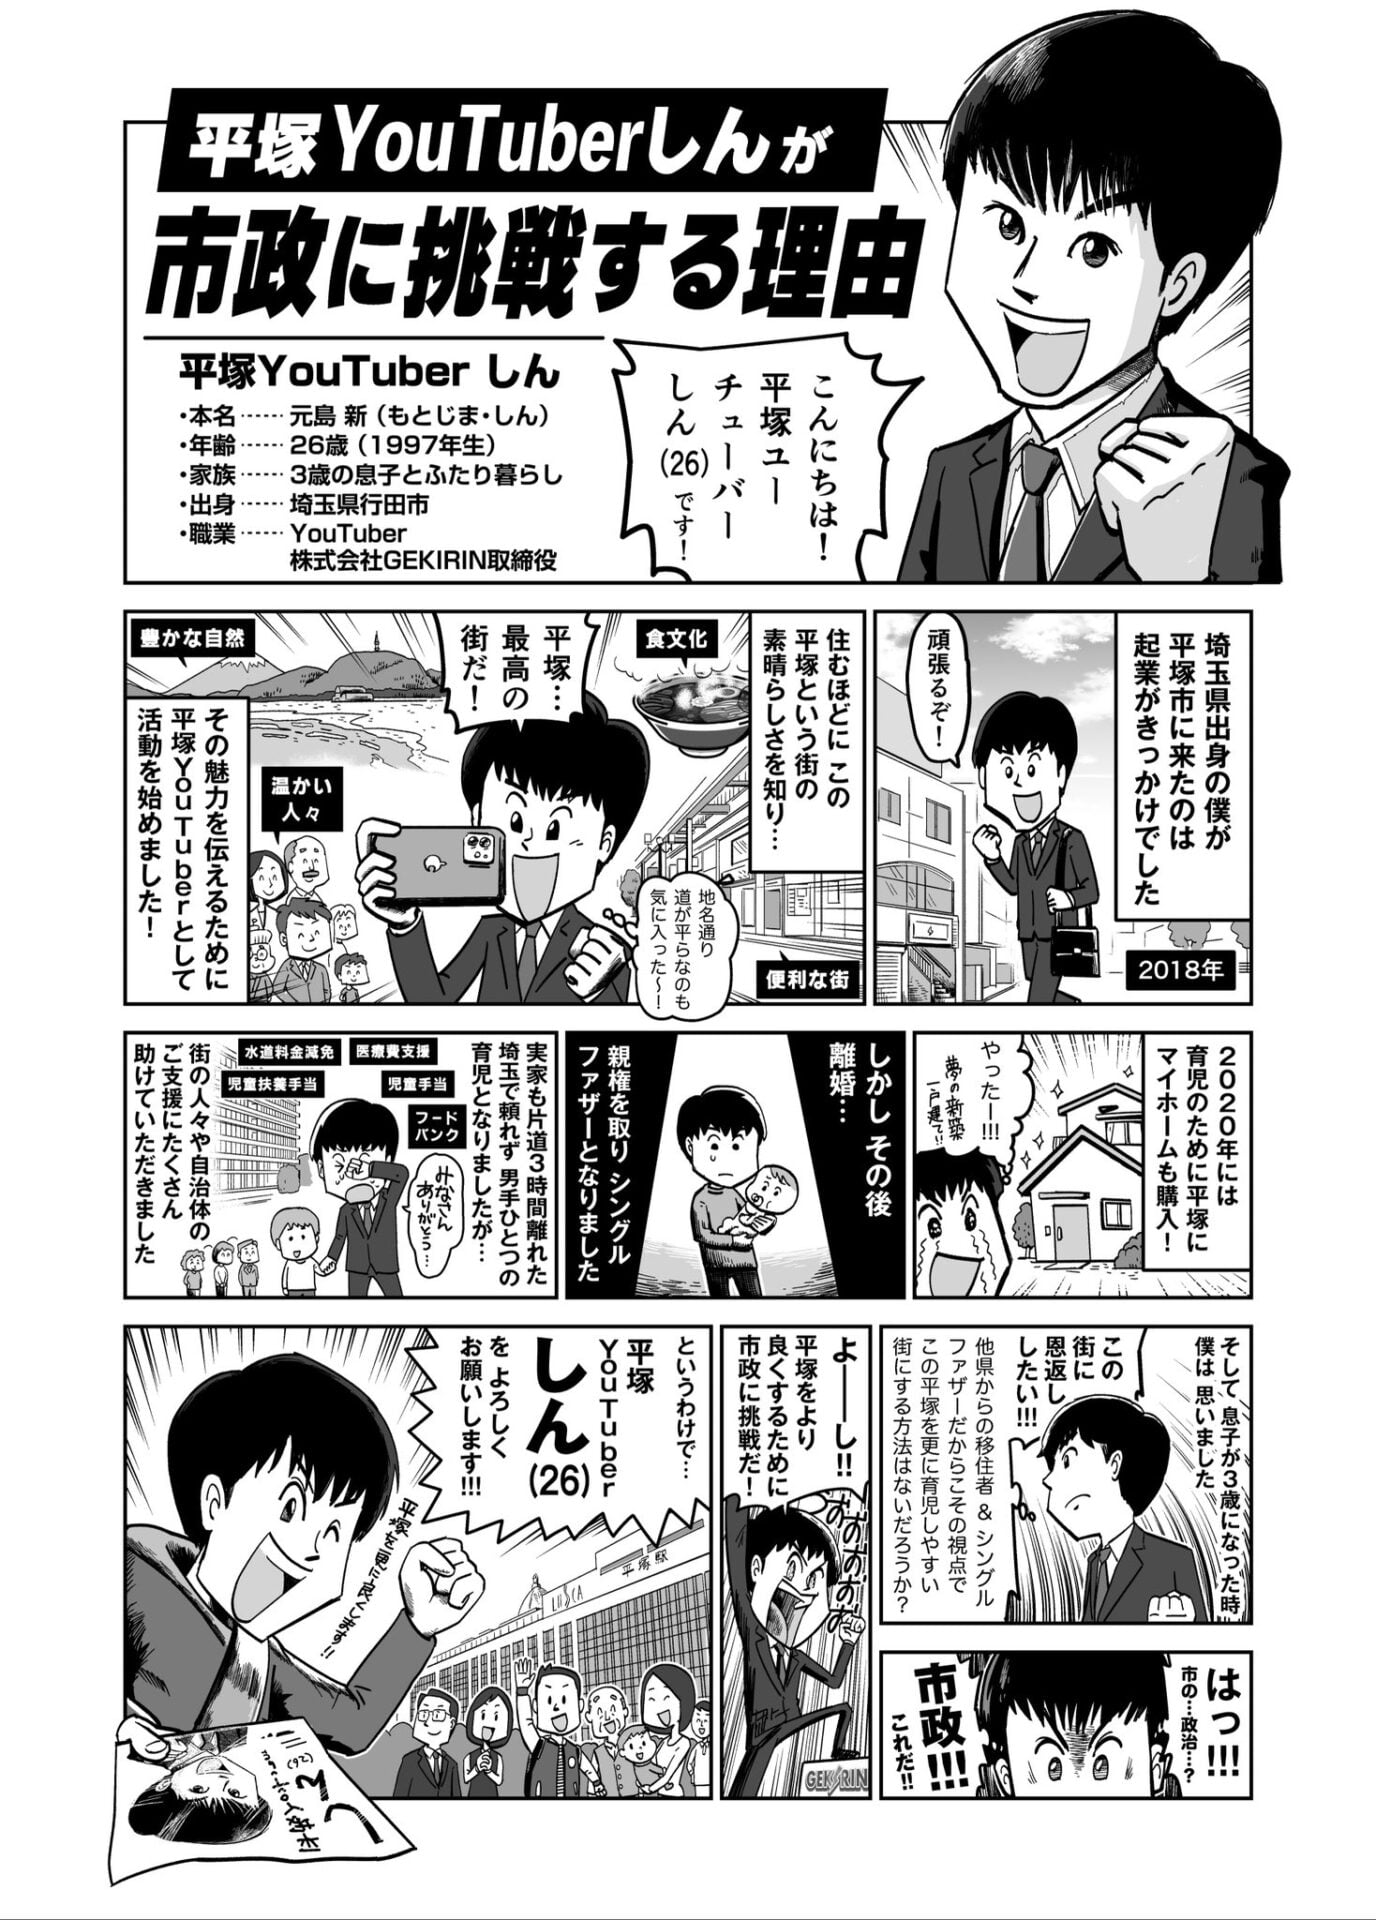 【政策漫画】平塚YouTuberしんが市政に挑戦する理由